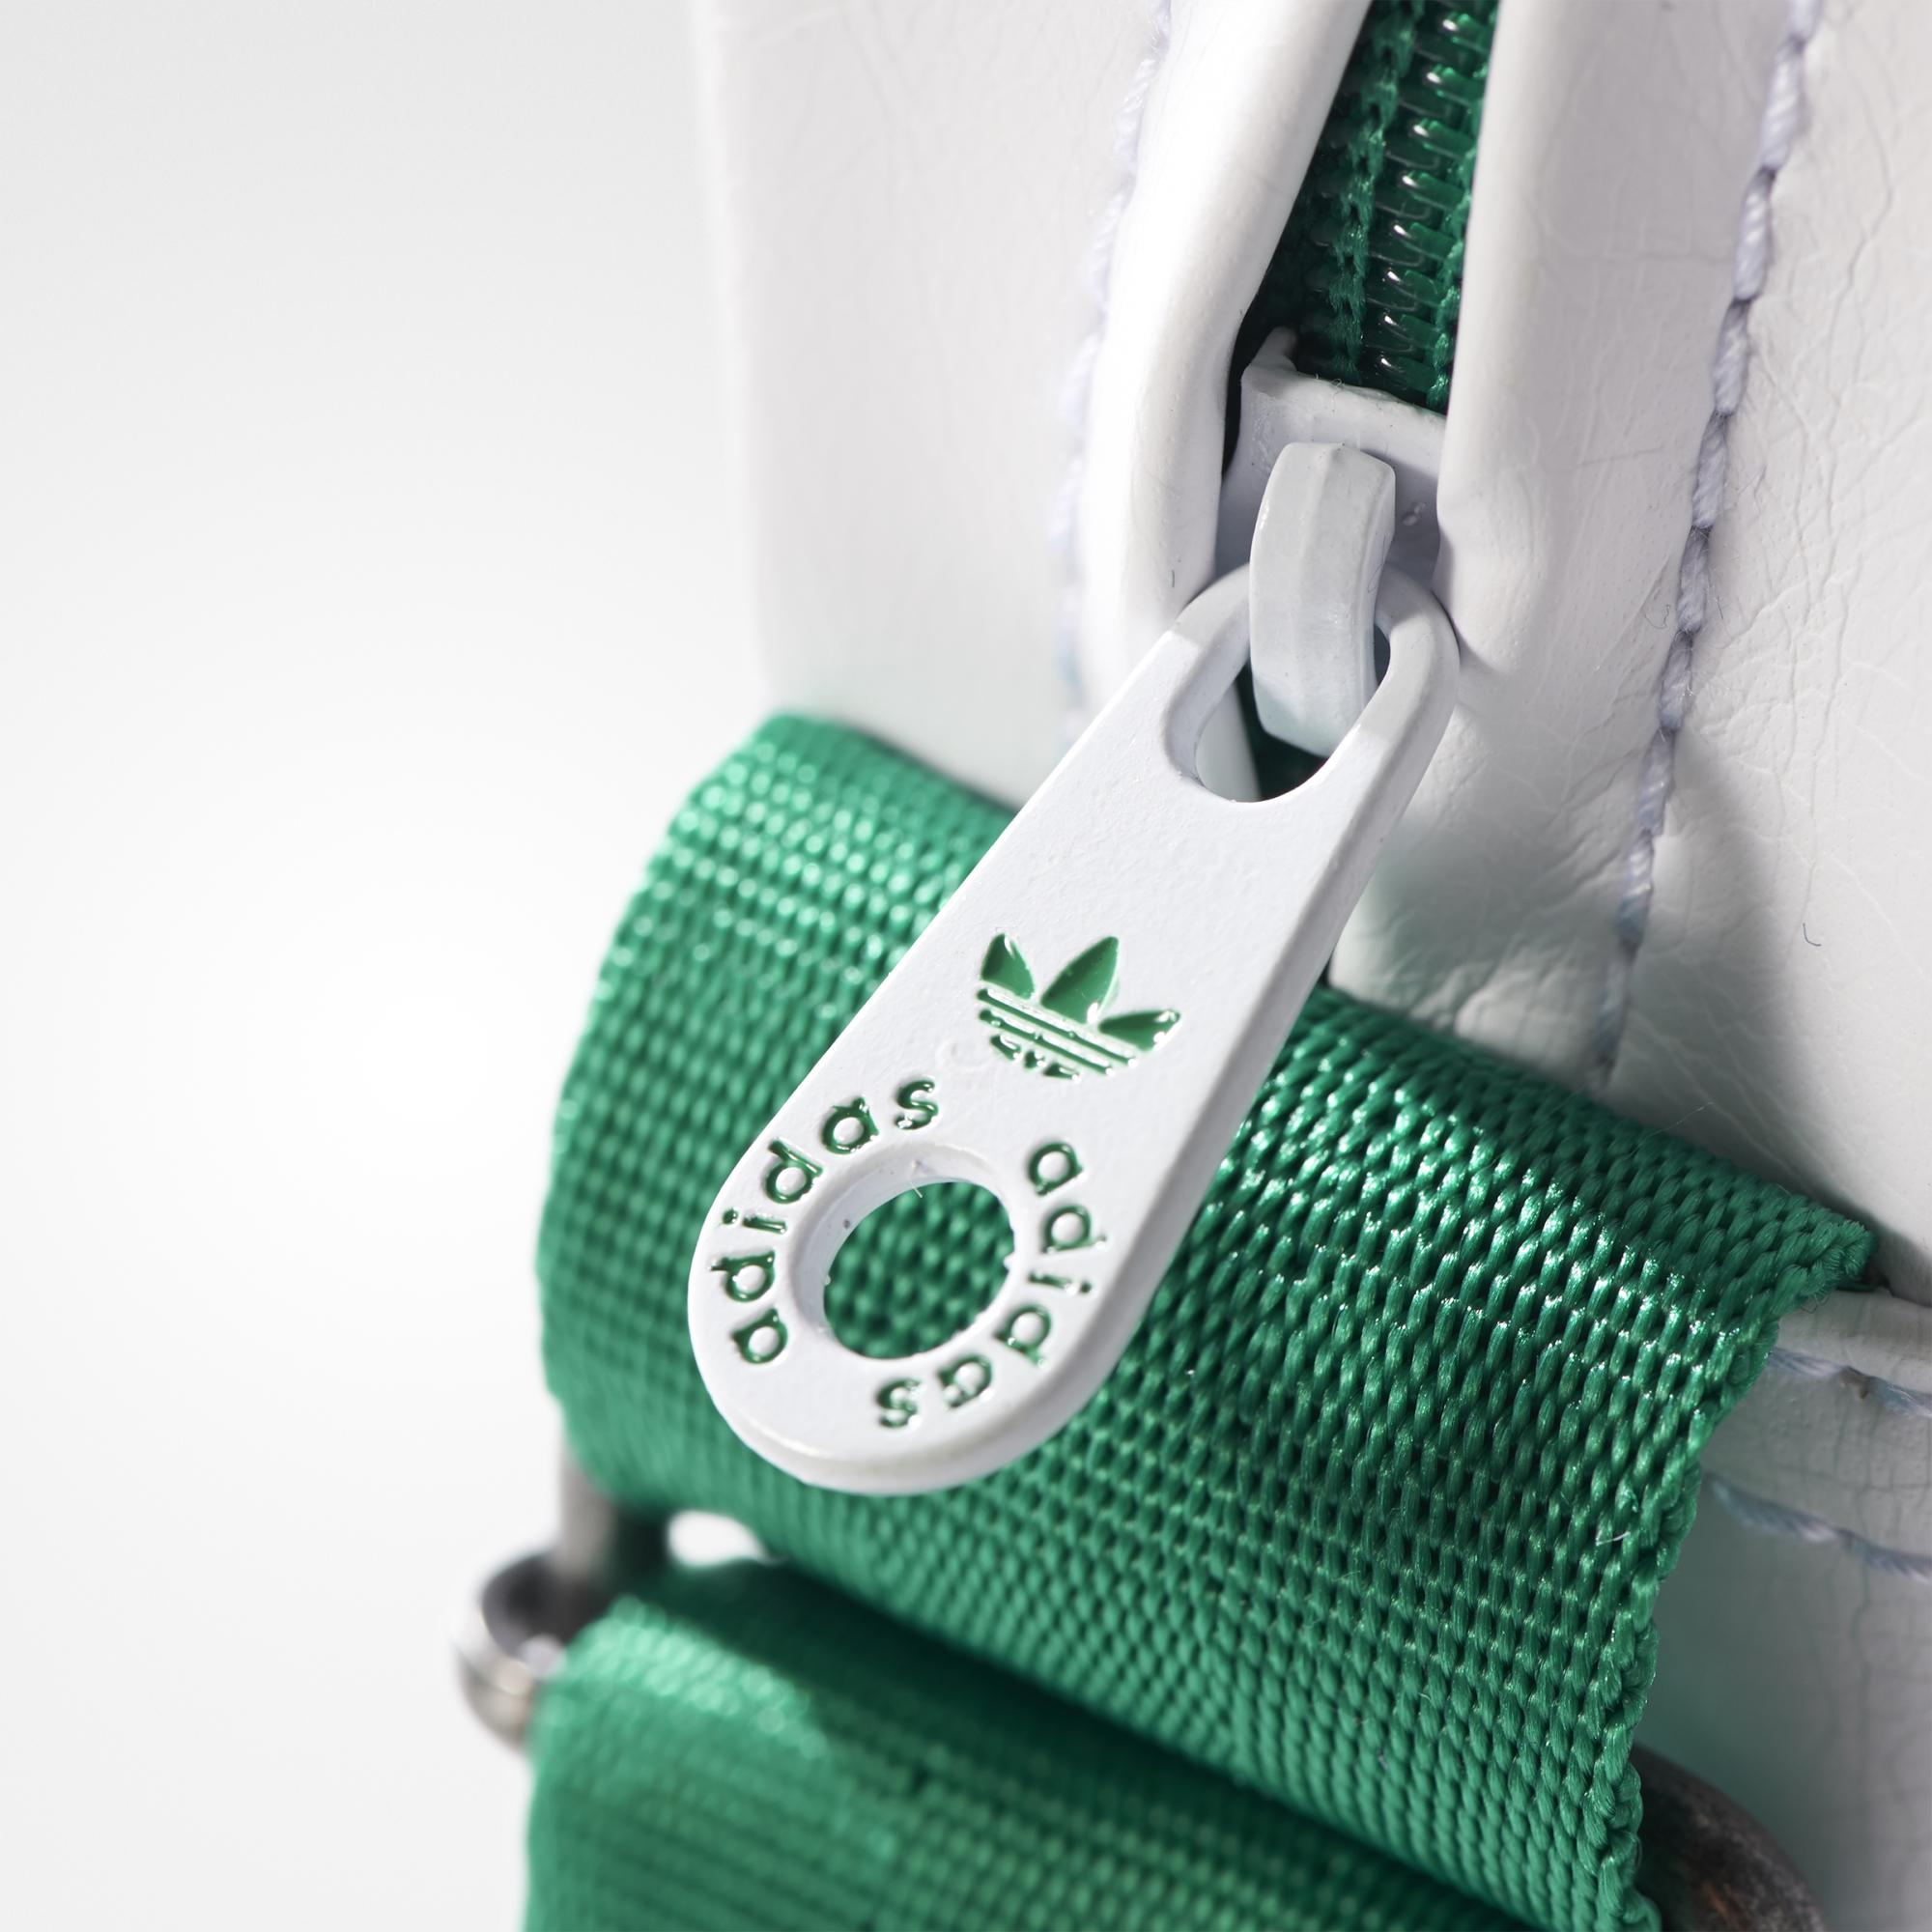 Adidas Originals Mini Bag (blanco/verde)